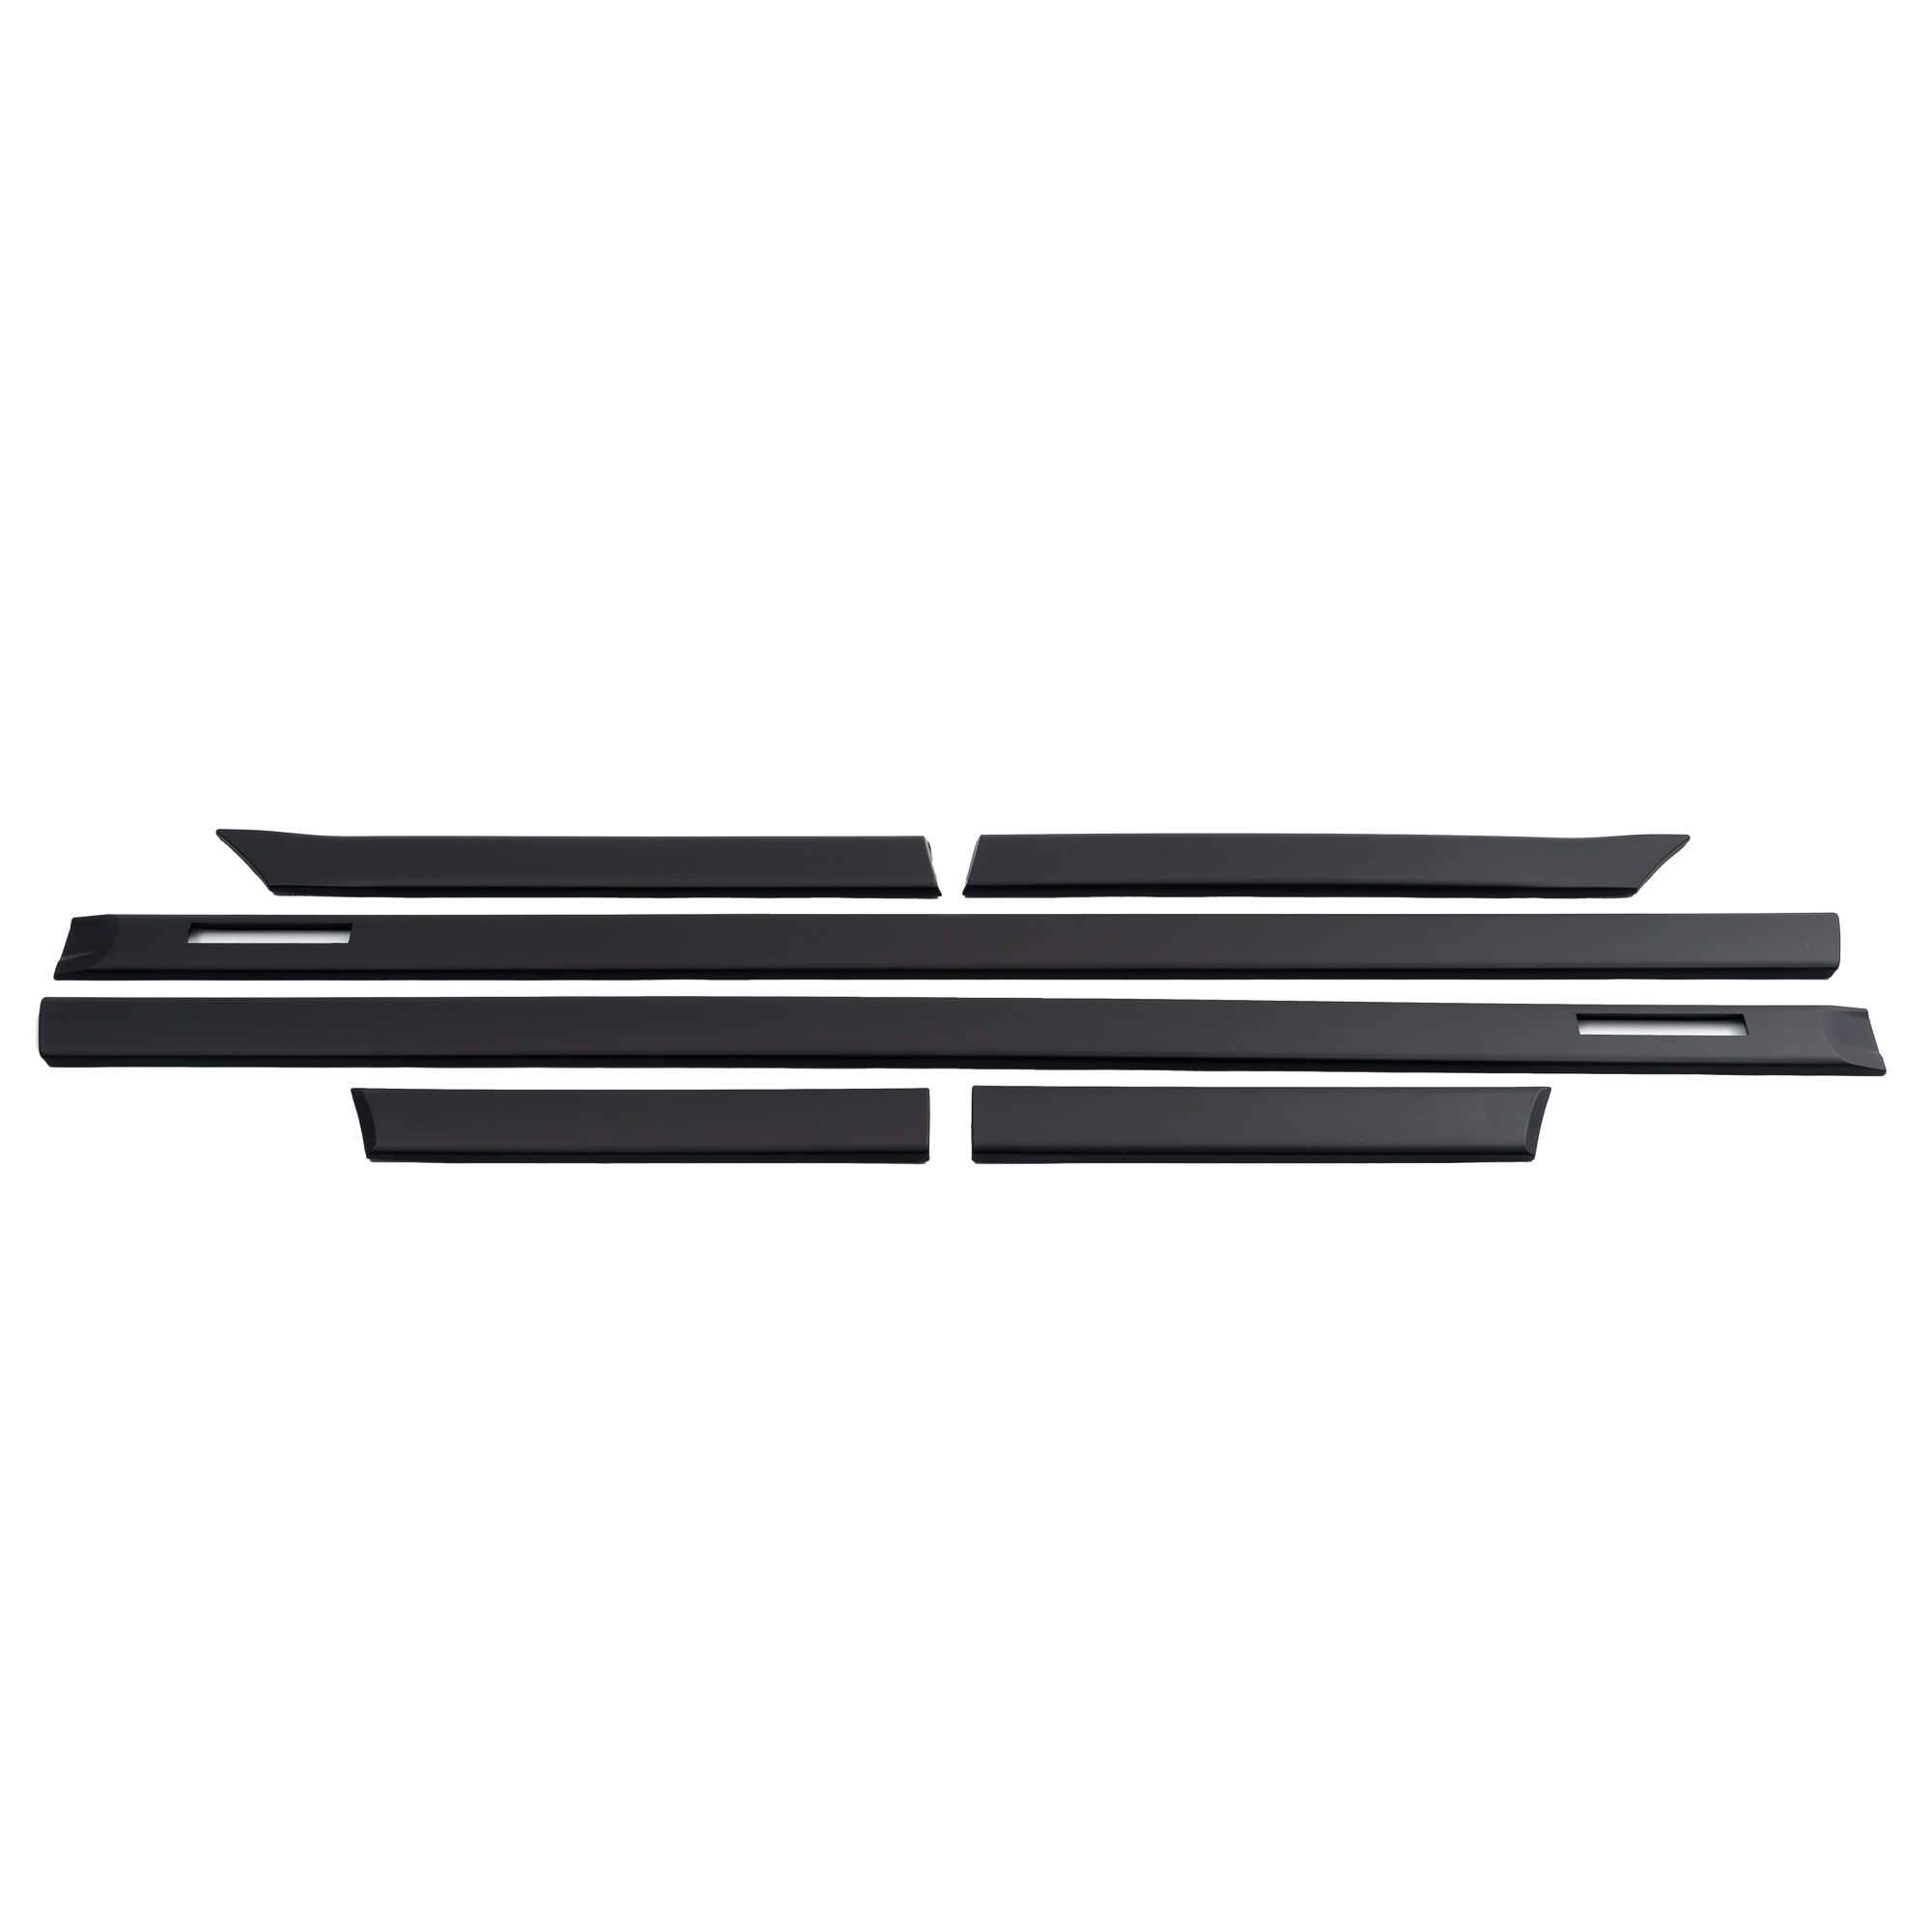 Seitenleisten Türleisten Satz Set für E36 Coupe Cabrio schwarz 6 teilig  passend für passend für E36, 3er, Coupe/ Cabrio,1992 - 1998